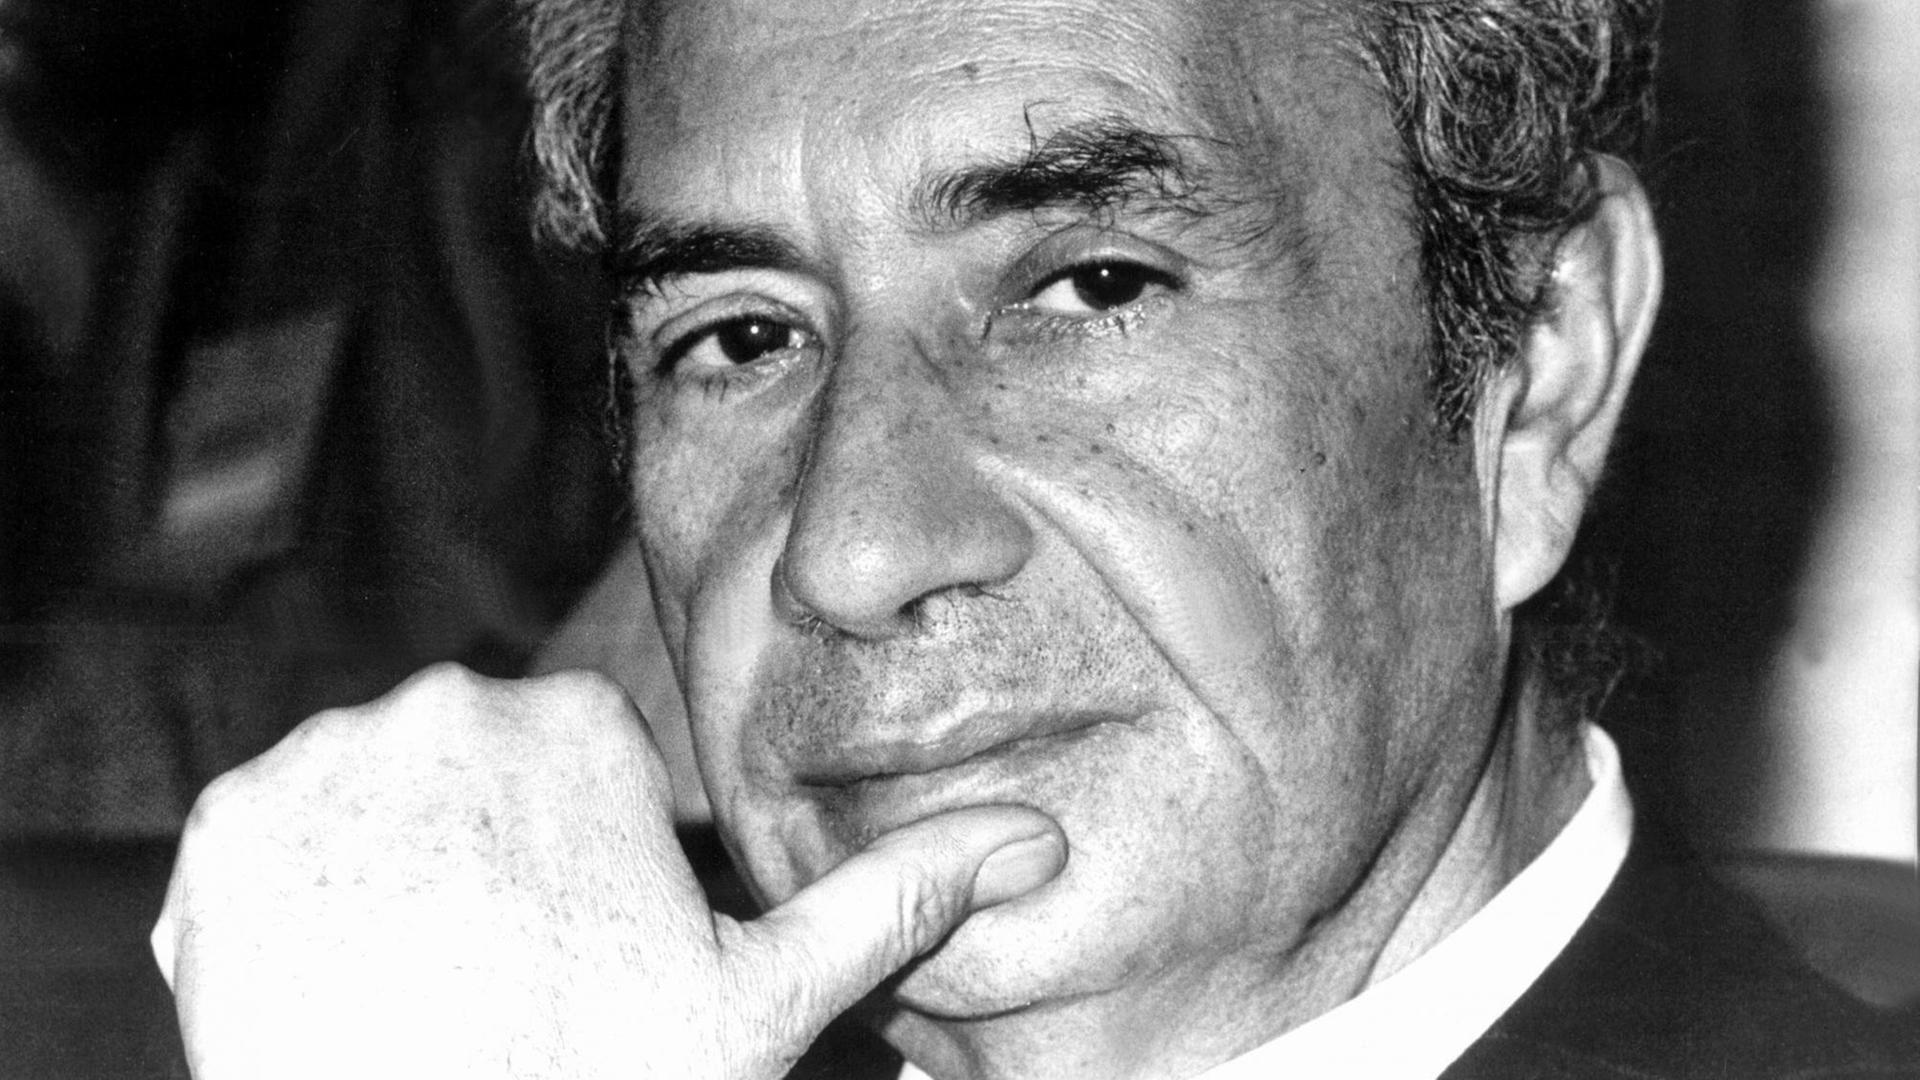 Der italienische Politiker und Jurist Aldo Moro (Democrazia Cristiana) im Jahr 1977